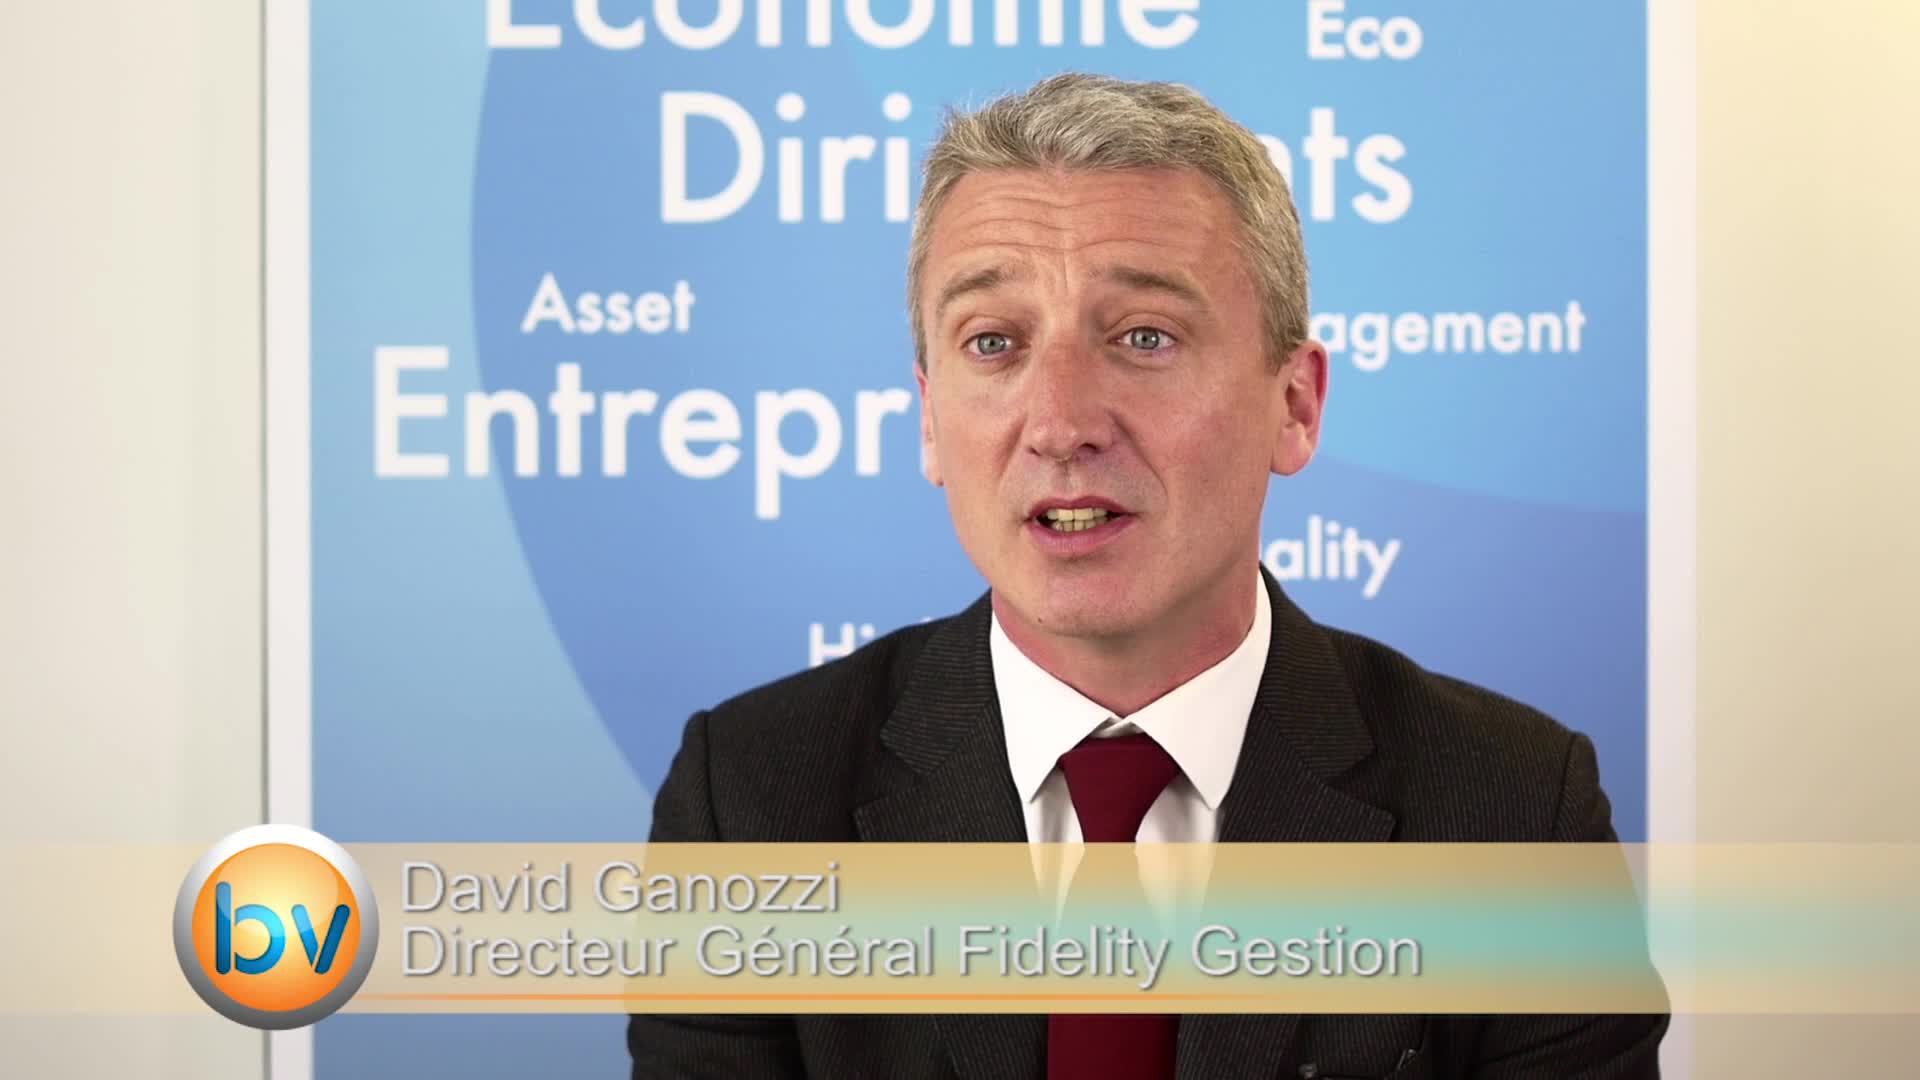 David Ganozzi Directeur Général Fidelity Gestion : “Le processus de hausse de taux aux US peut se faire de façon douce”